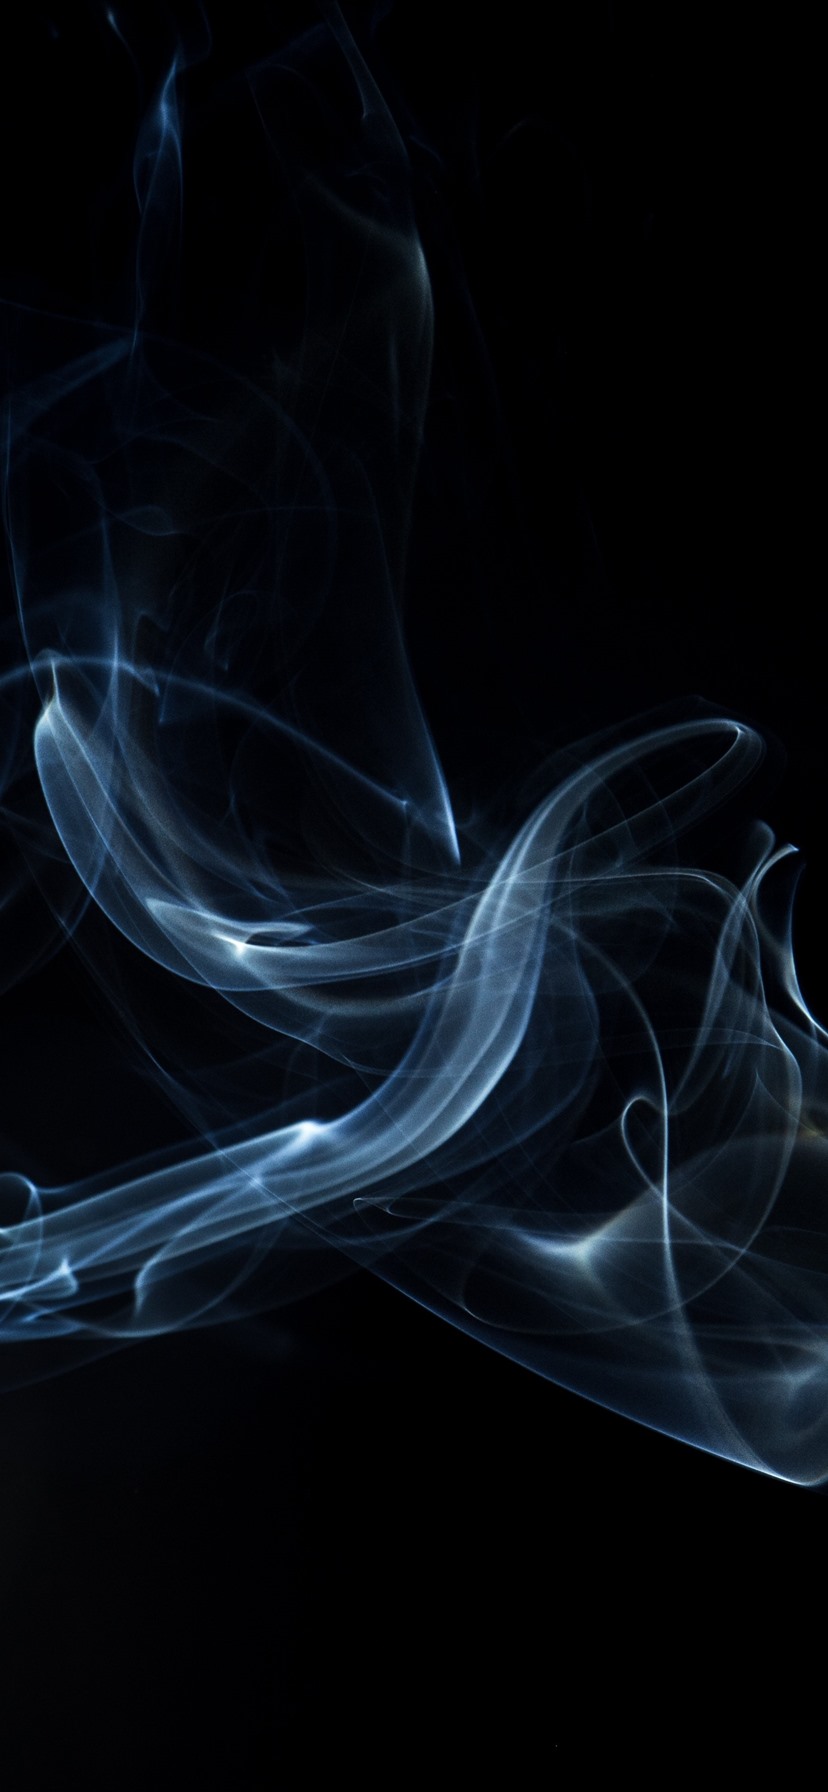 papel tapiz de humo,fumar,negro,oscuridad,cg artwork,gráficos